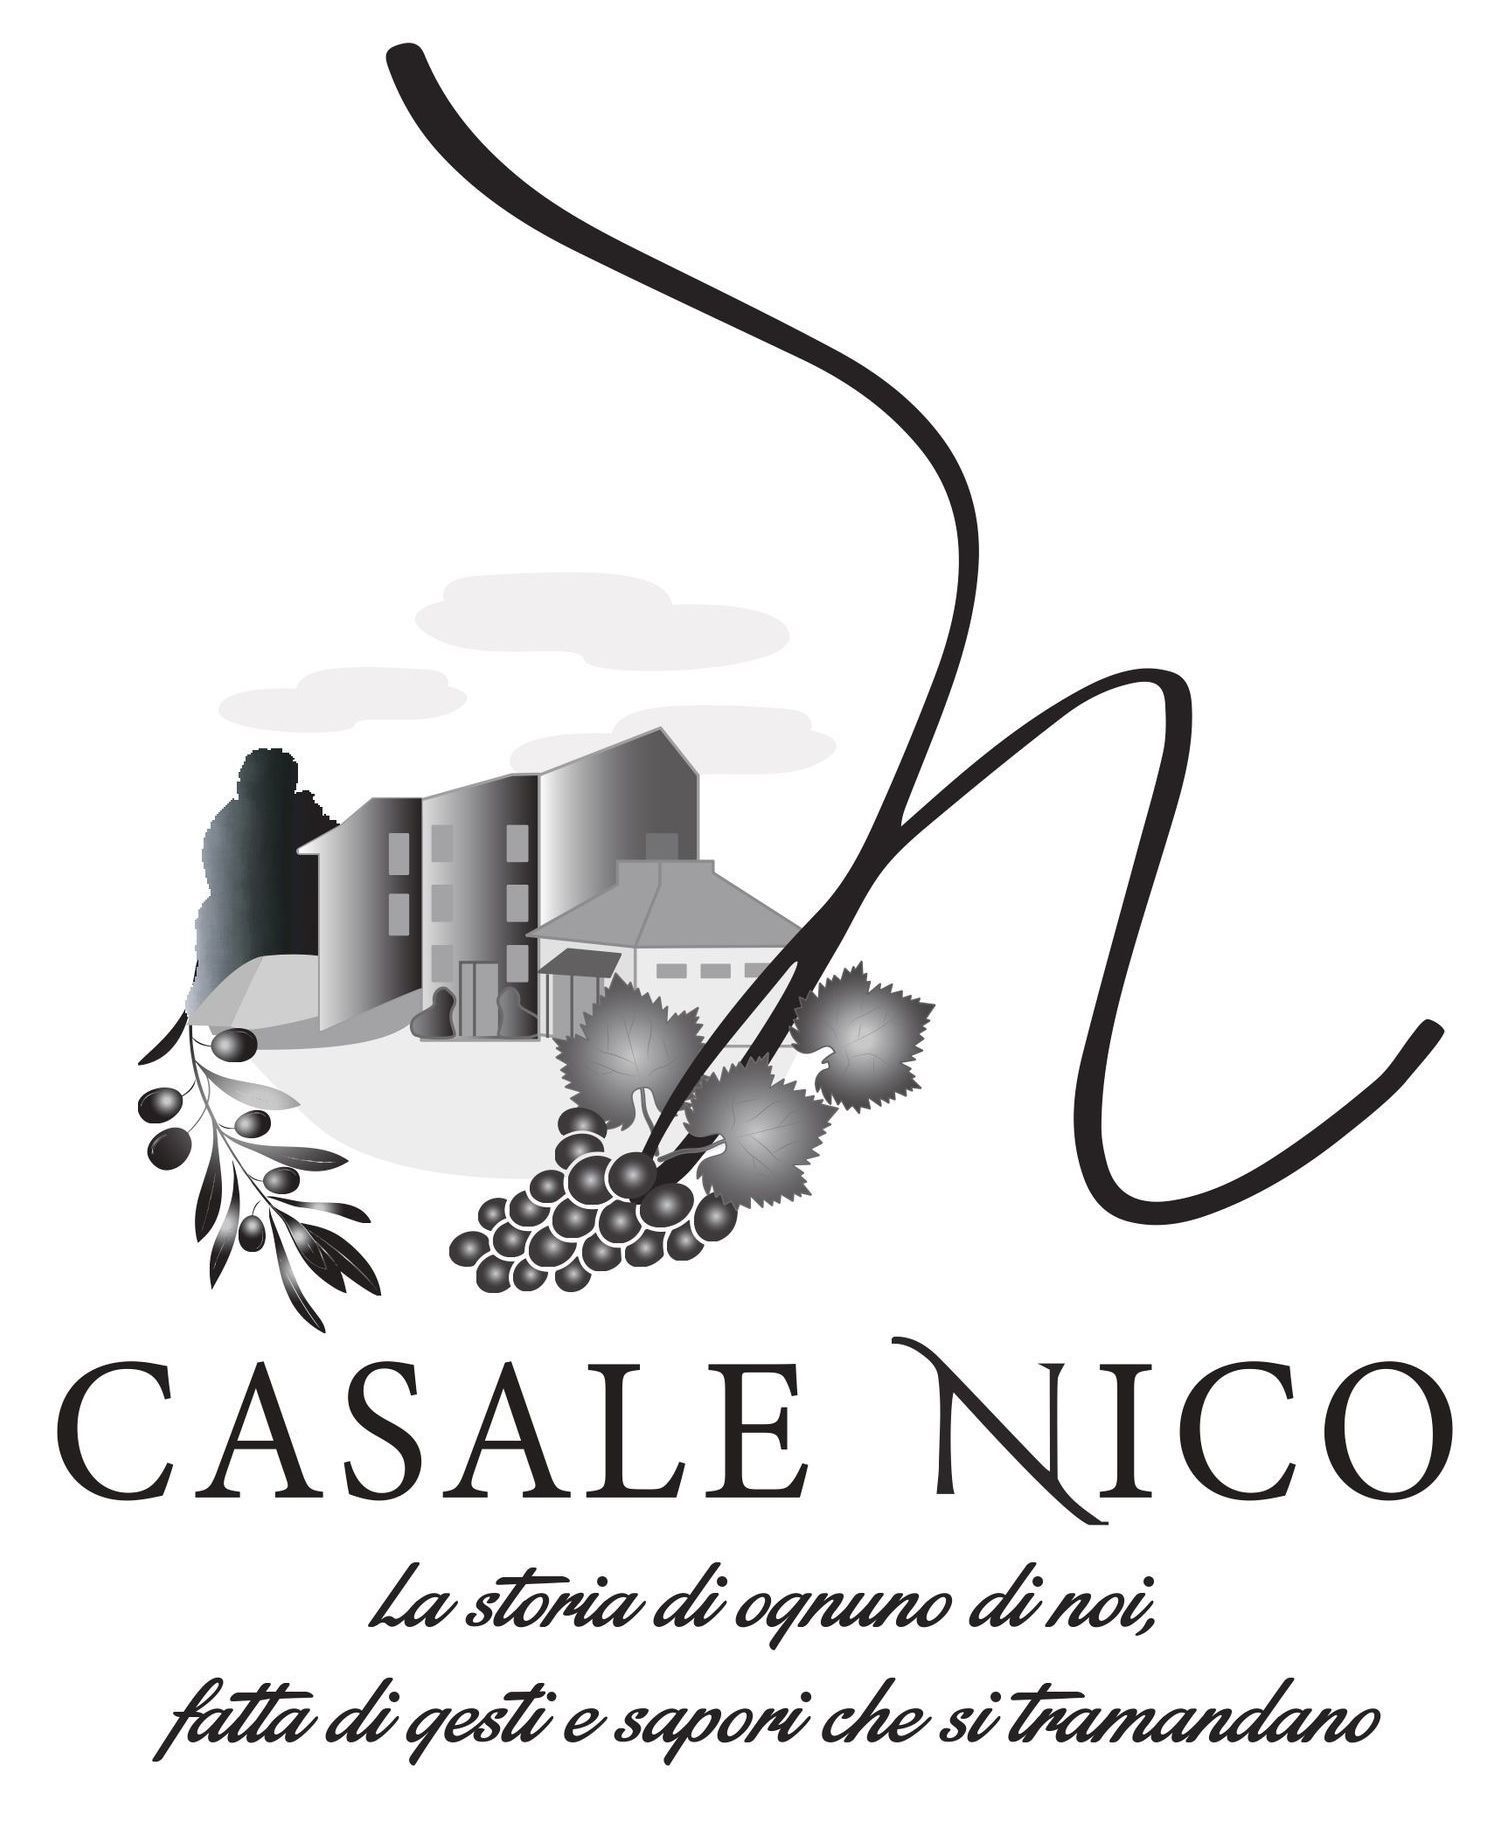 Casale Nico - logo